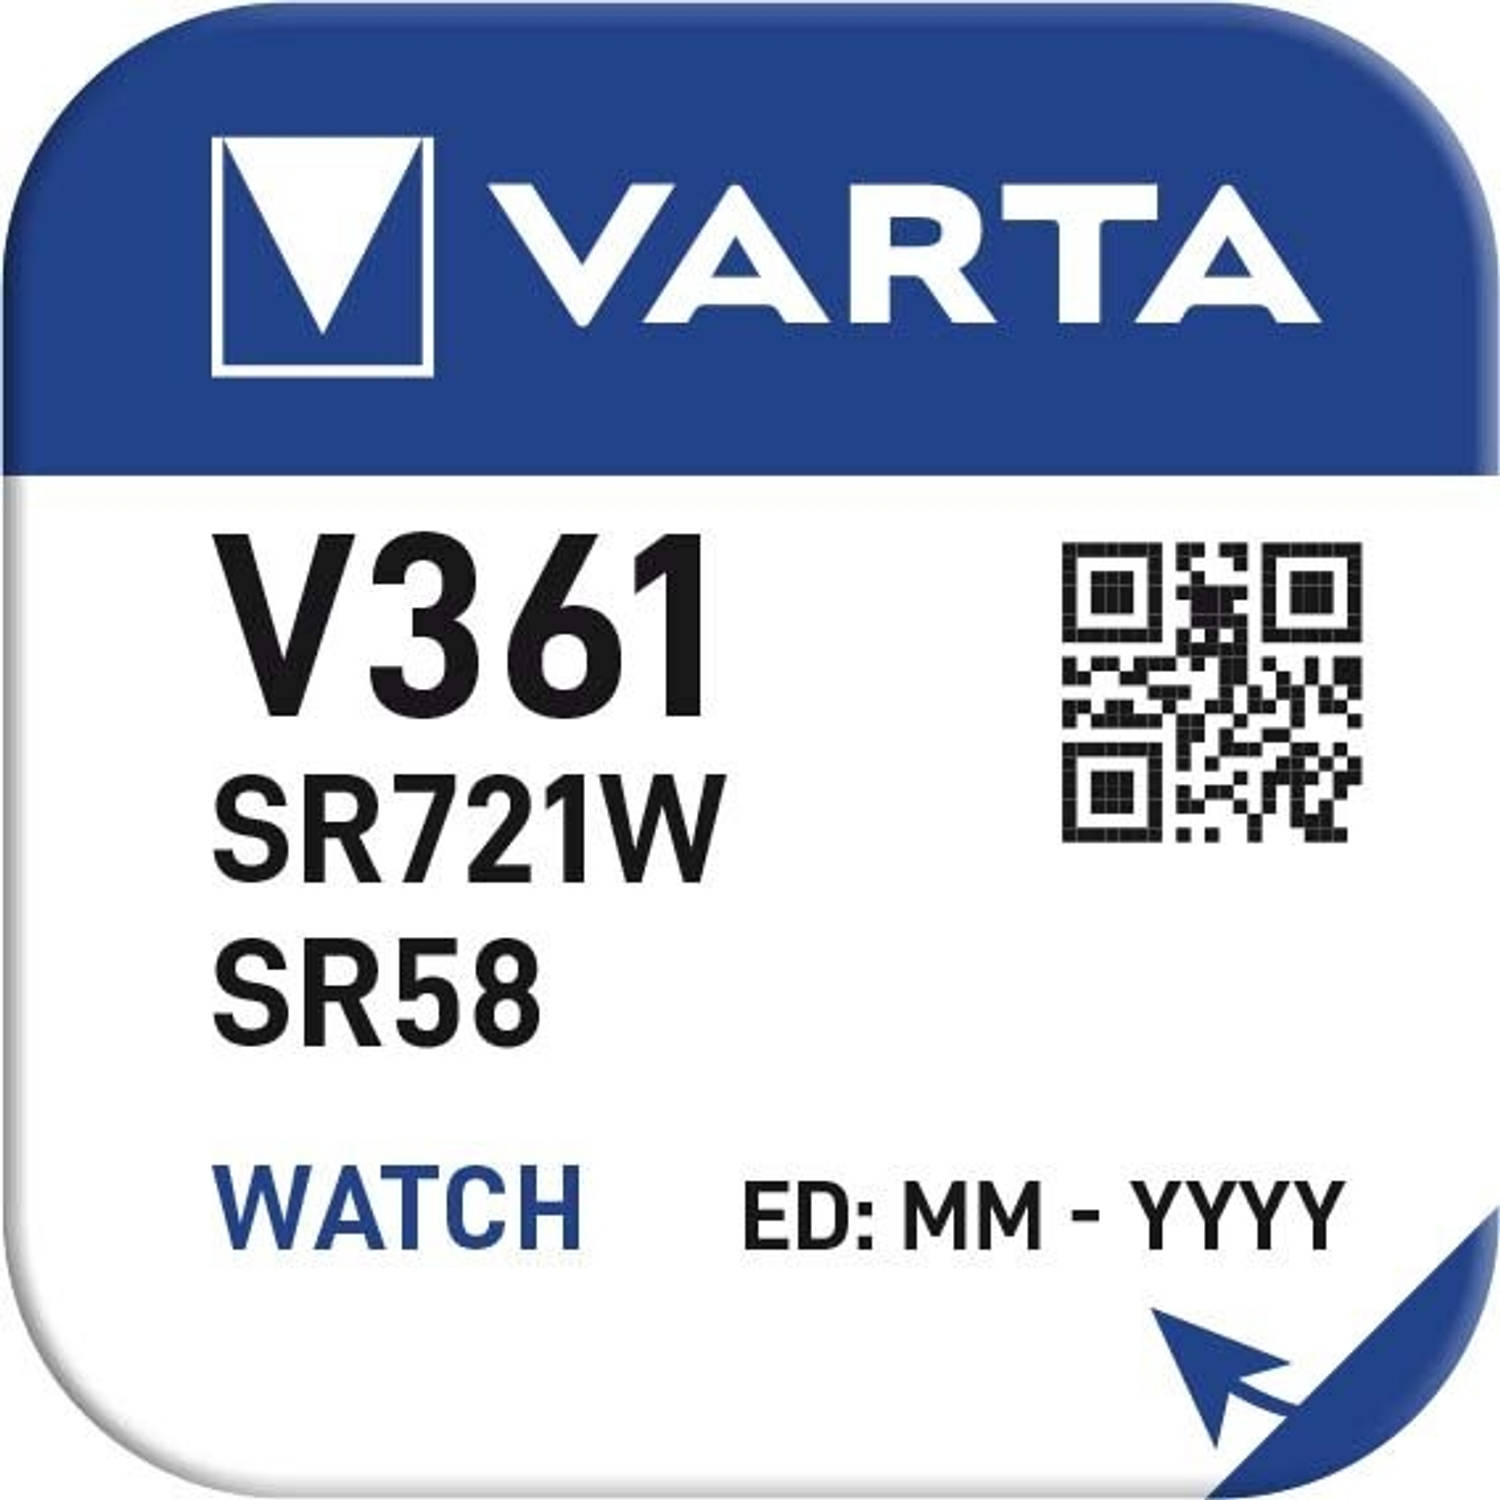 Varta 361 SR58 10 stuks in een doosje